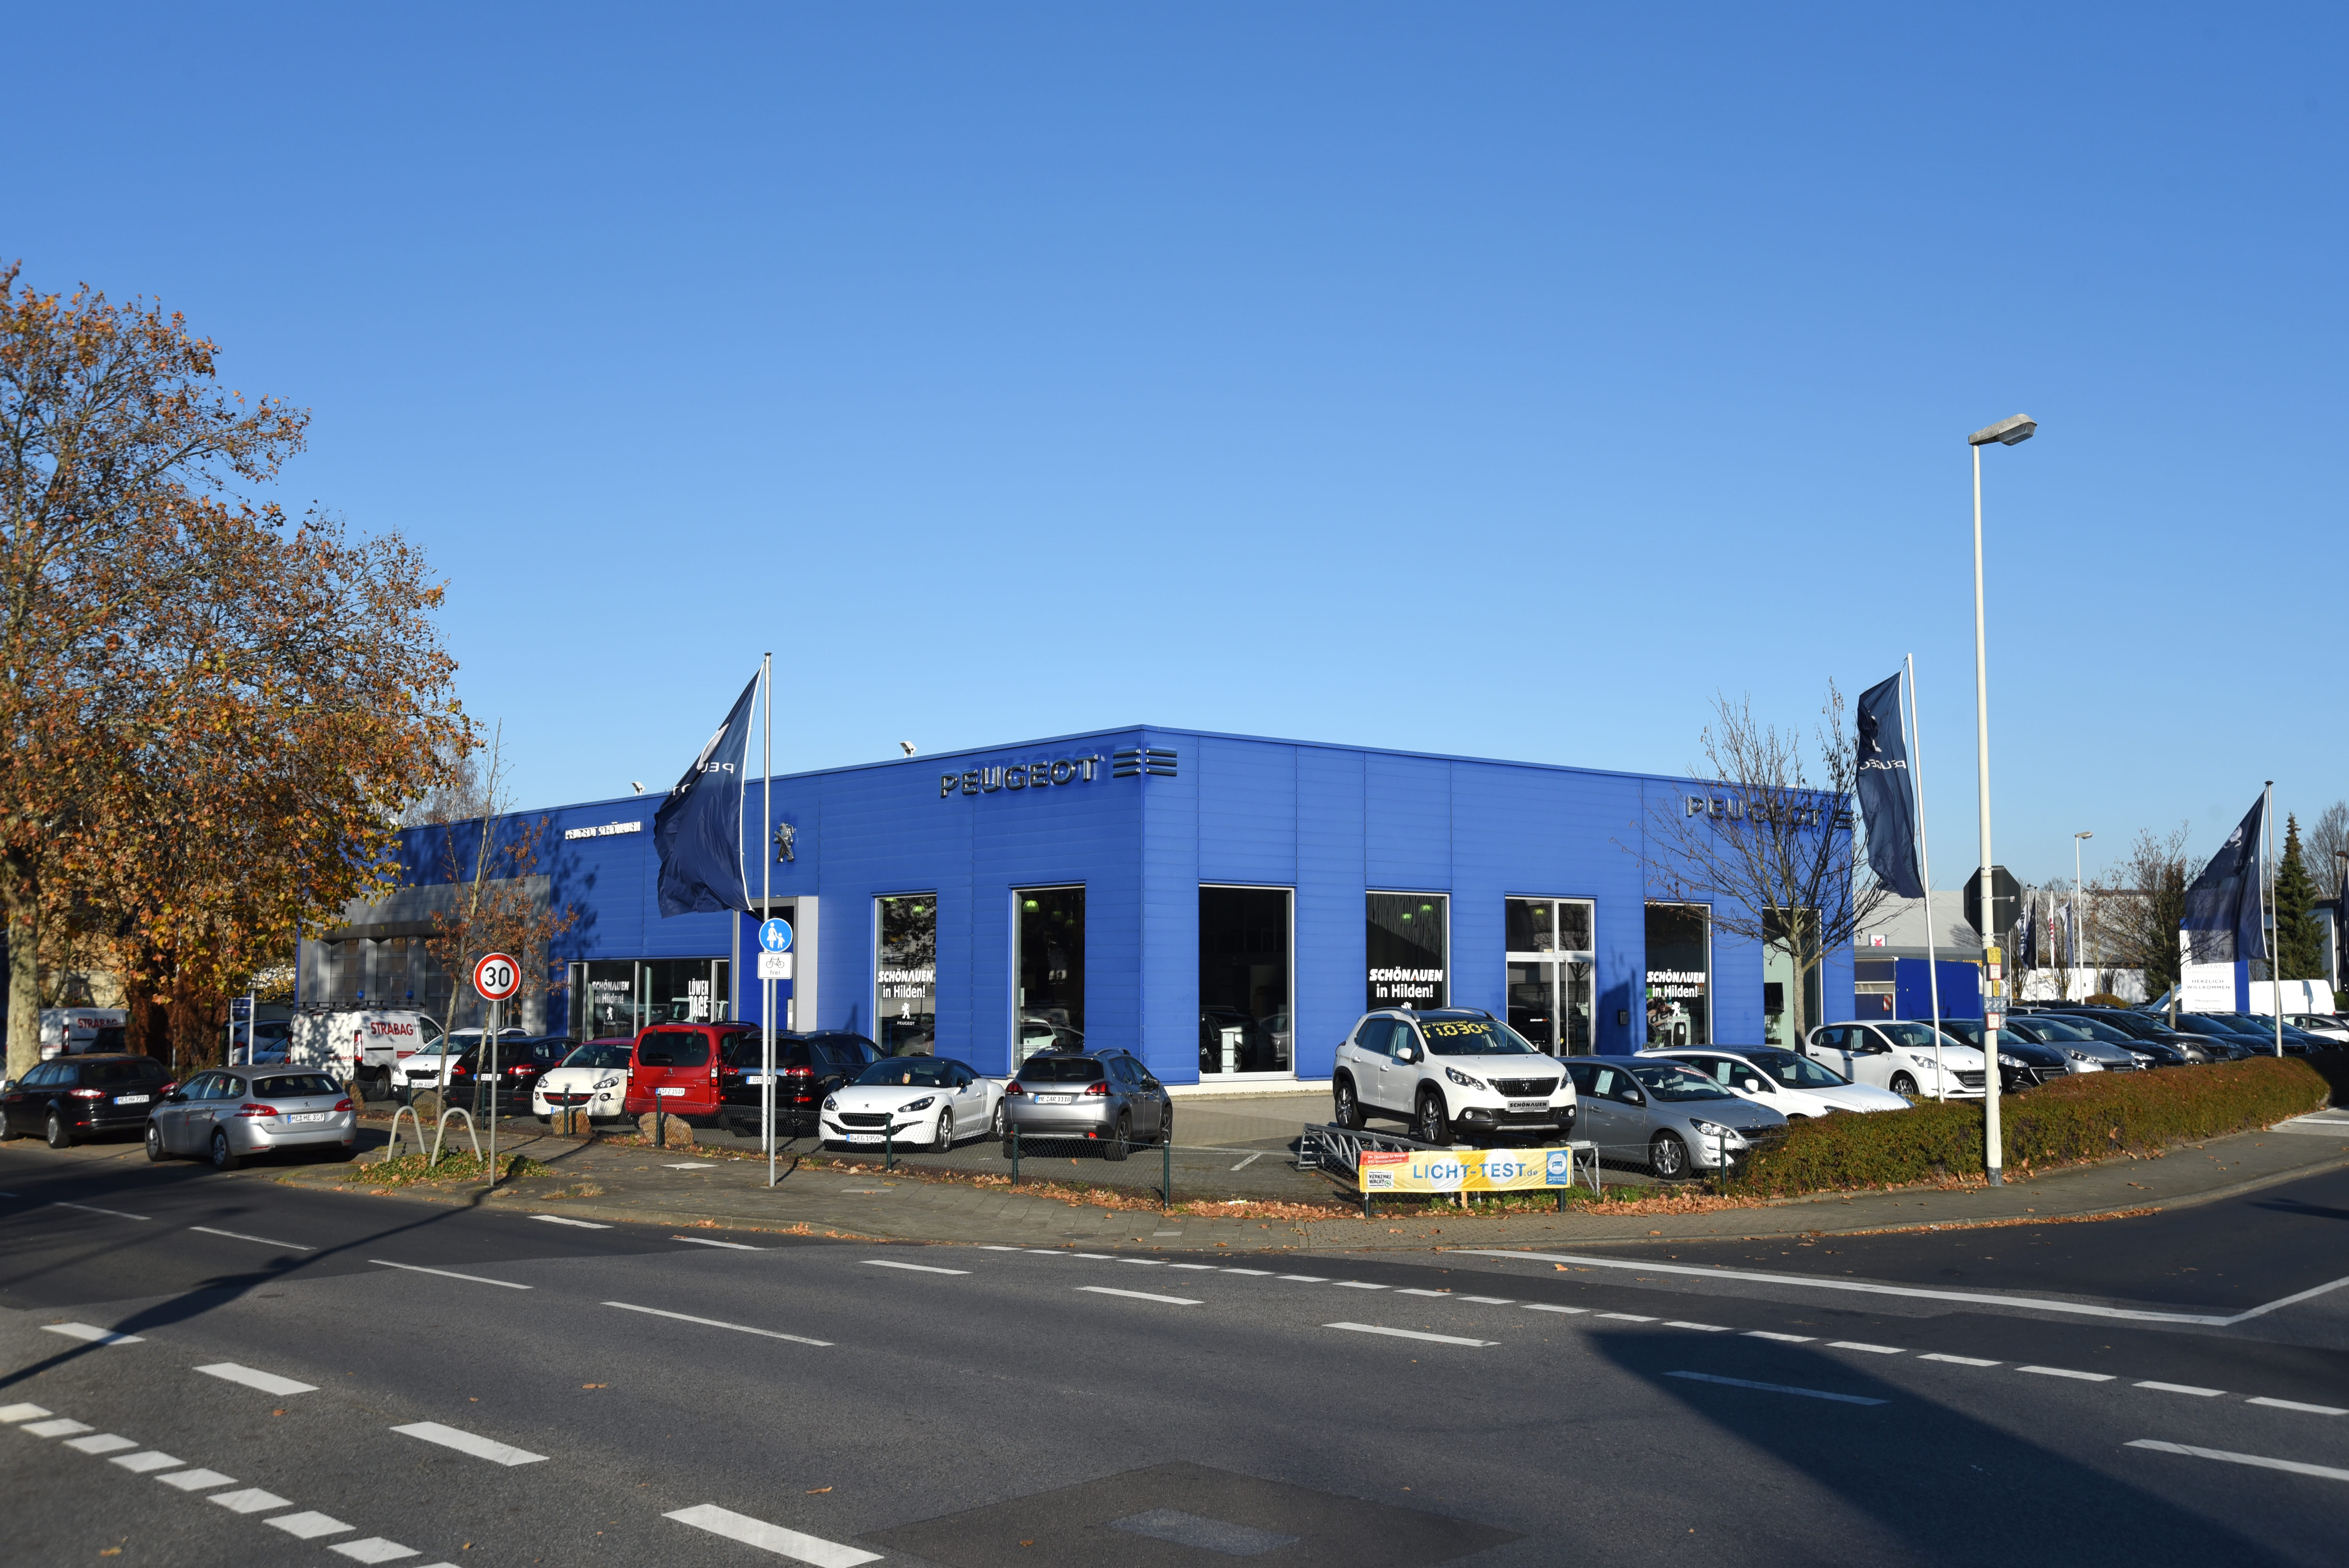 Schönauen Autohaus GmbH & Co. KG, Kleinhülsen 30 in Hilden